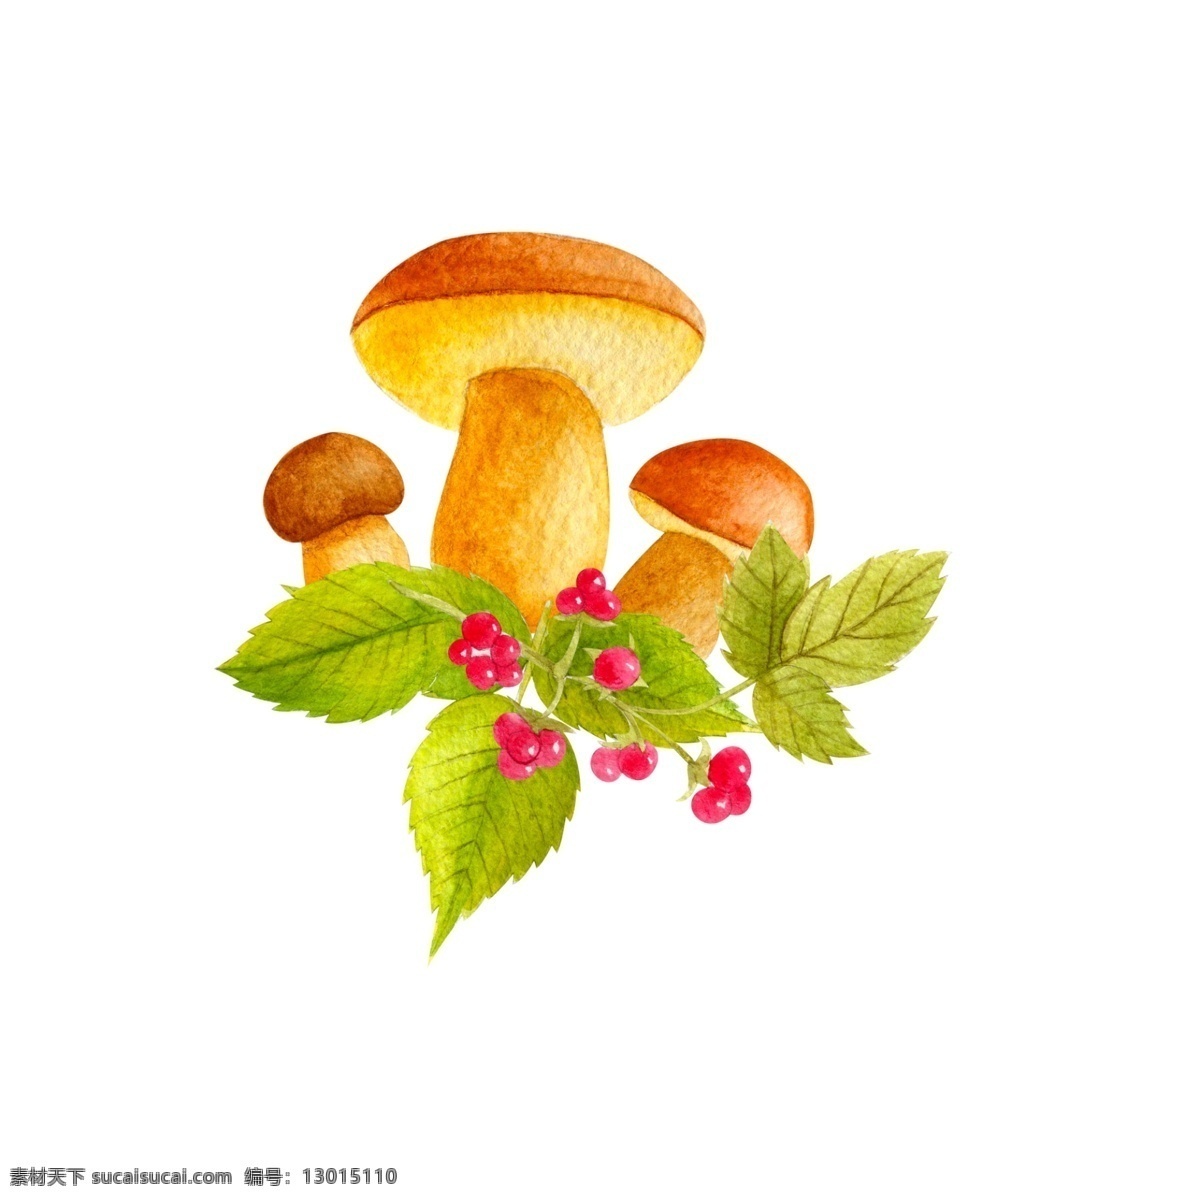 卡通蘑菇素材 水彩 叶子 蘑菇 彩色 果实 矢量素材 设计素材